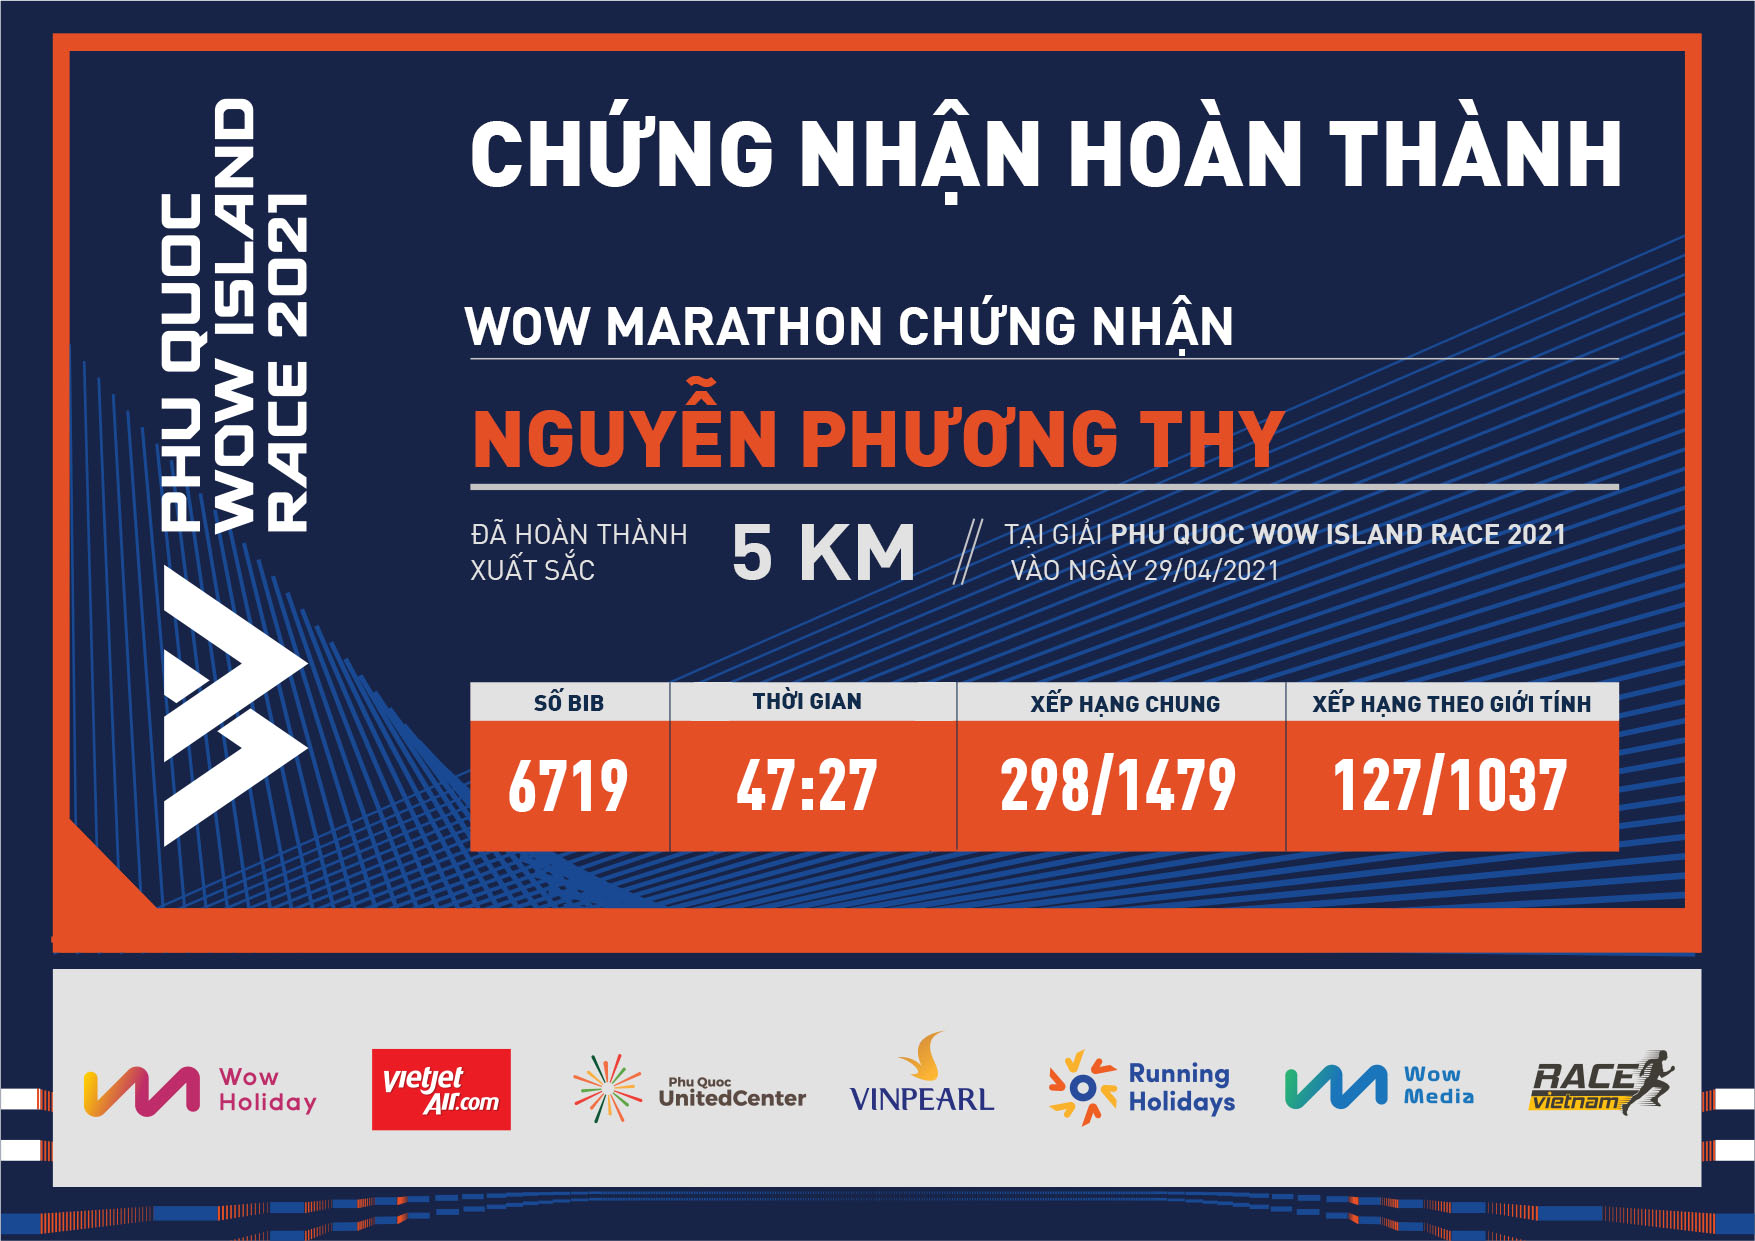 6719 - Nguyễn Phương Thy